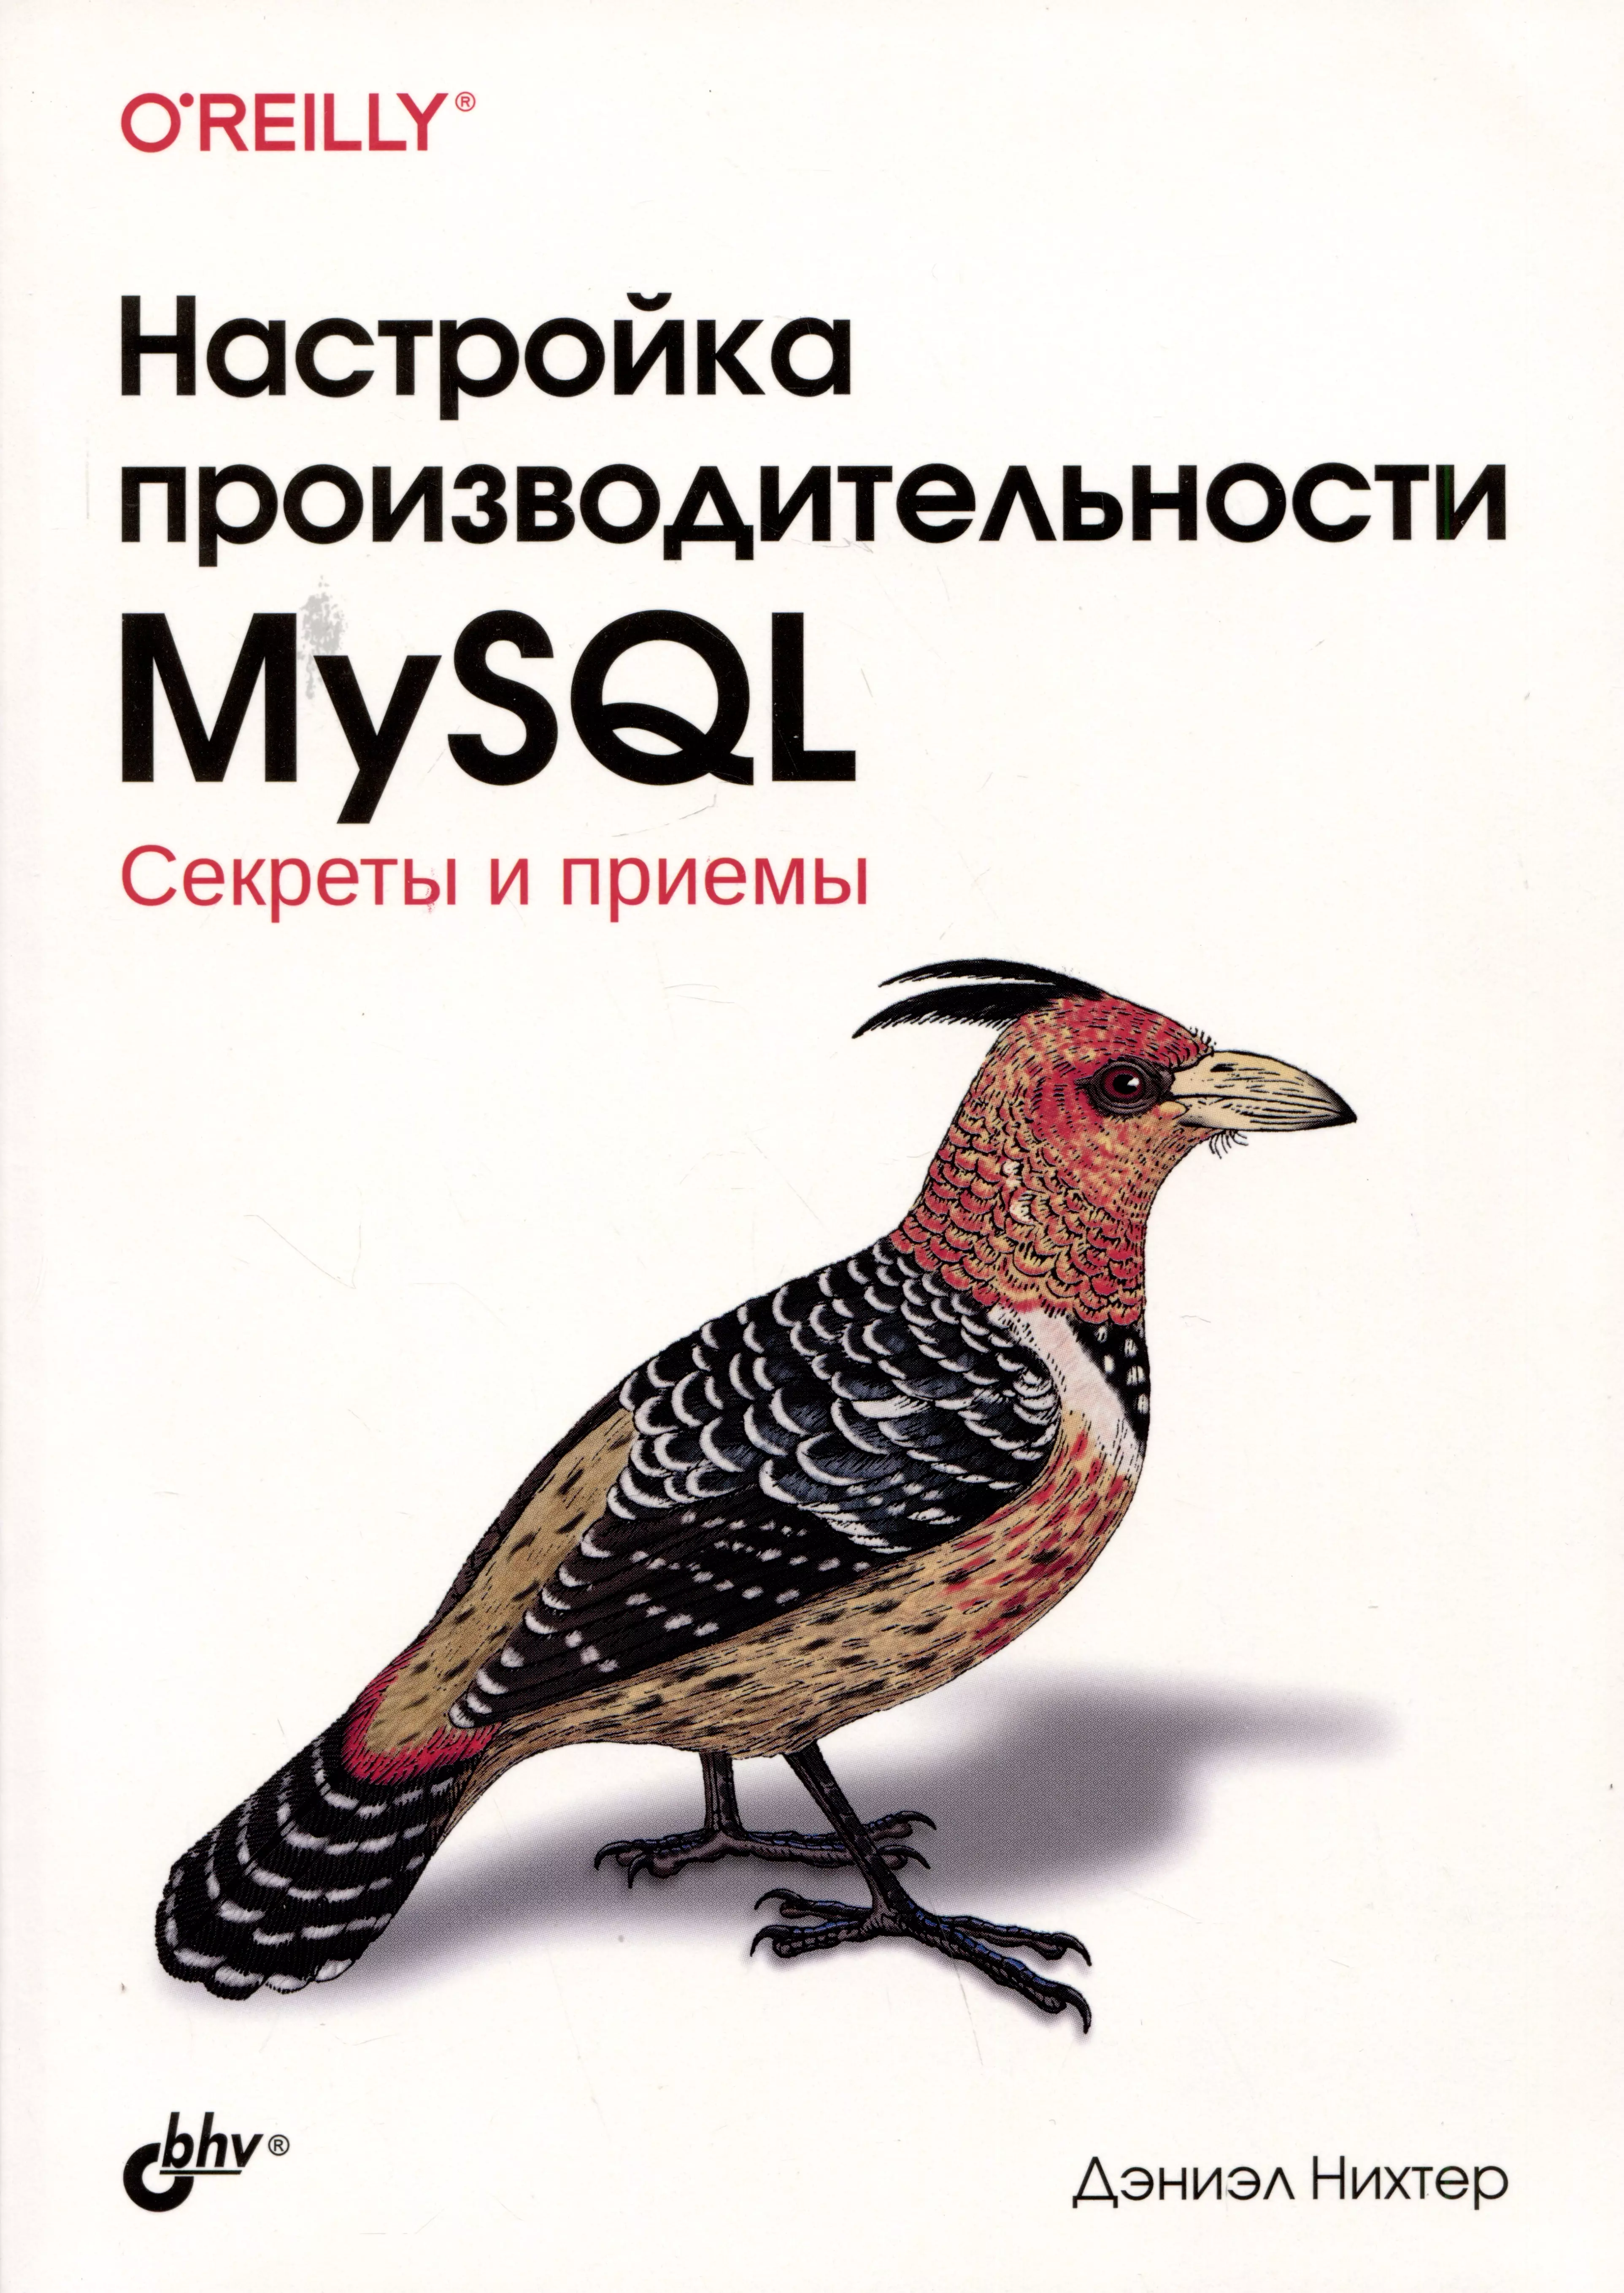 платонова я взлом приемы трюки и секреты хакеров версия 2 0 Настройка производительности MySQL. Секреты и приемы